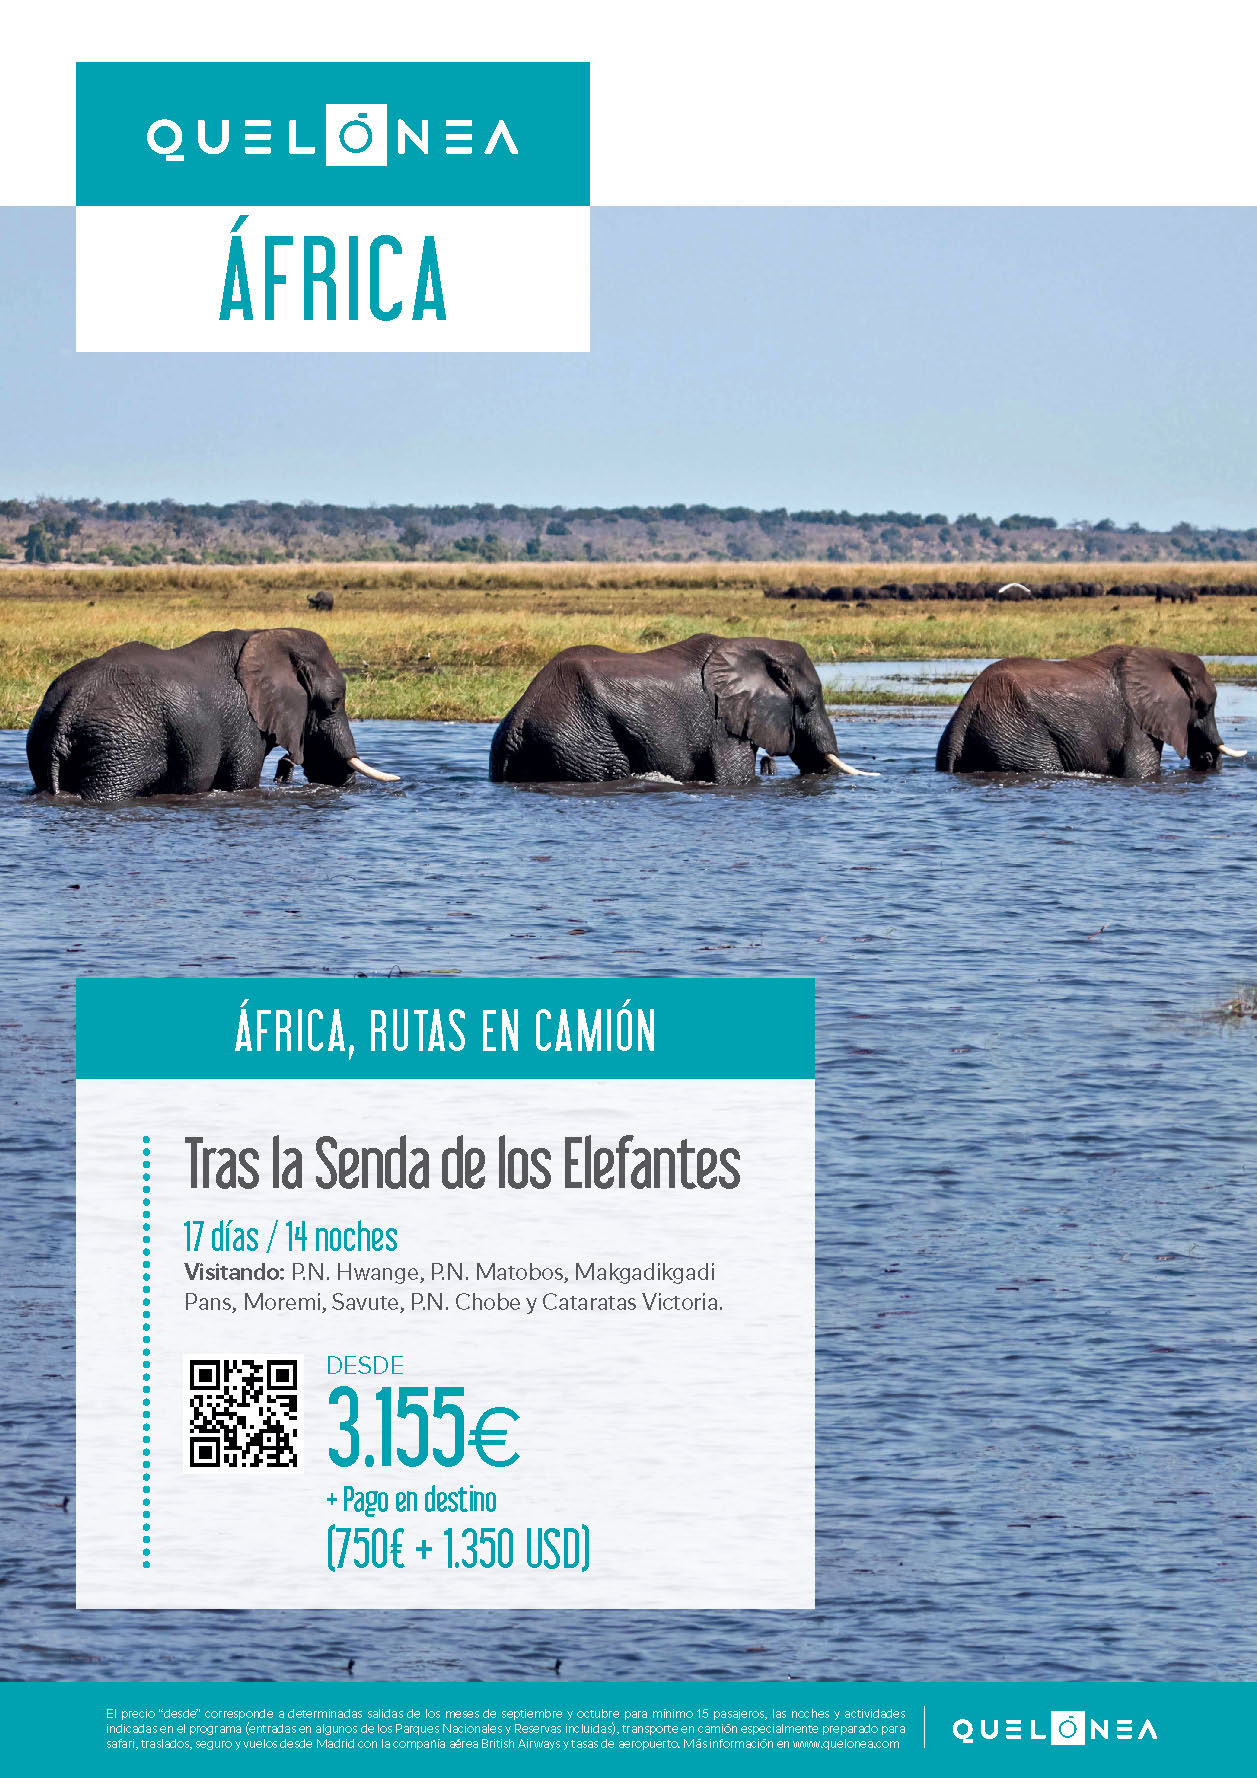 Oferta Quelonea 2022-2023 Circuito Africa Ruta en camion Tras la Senda de los Elefantes 17 dias